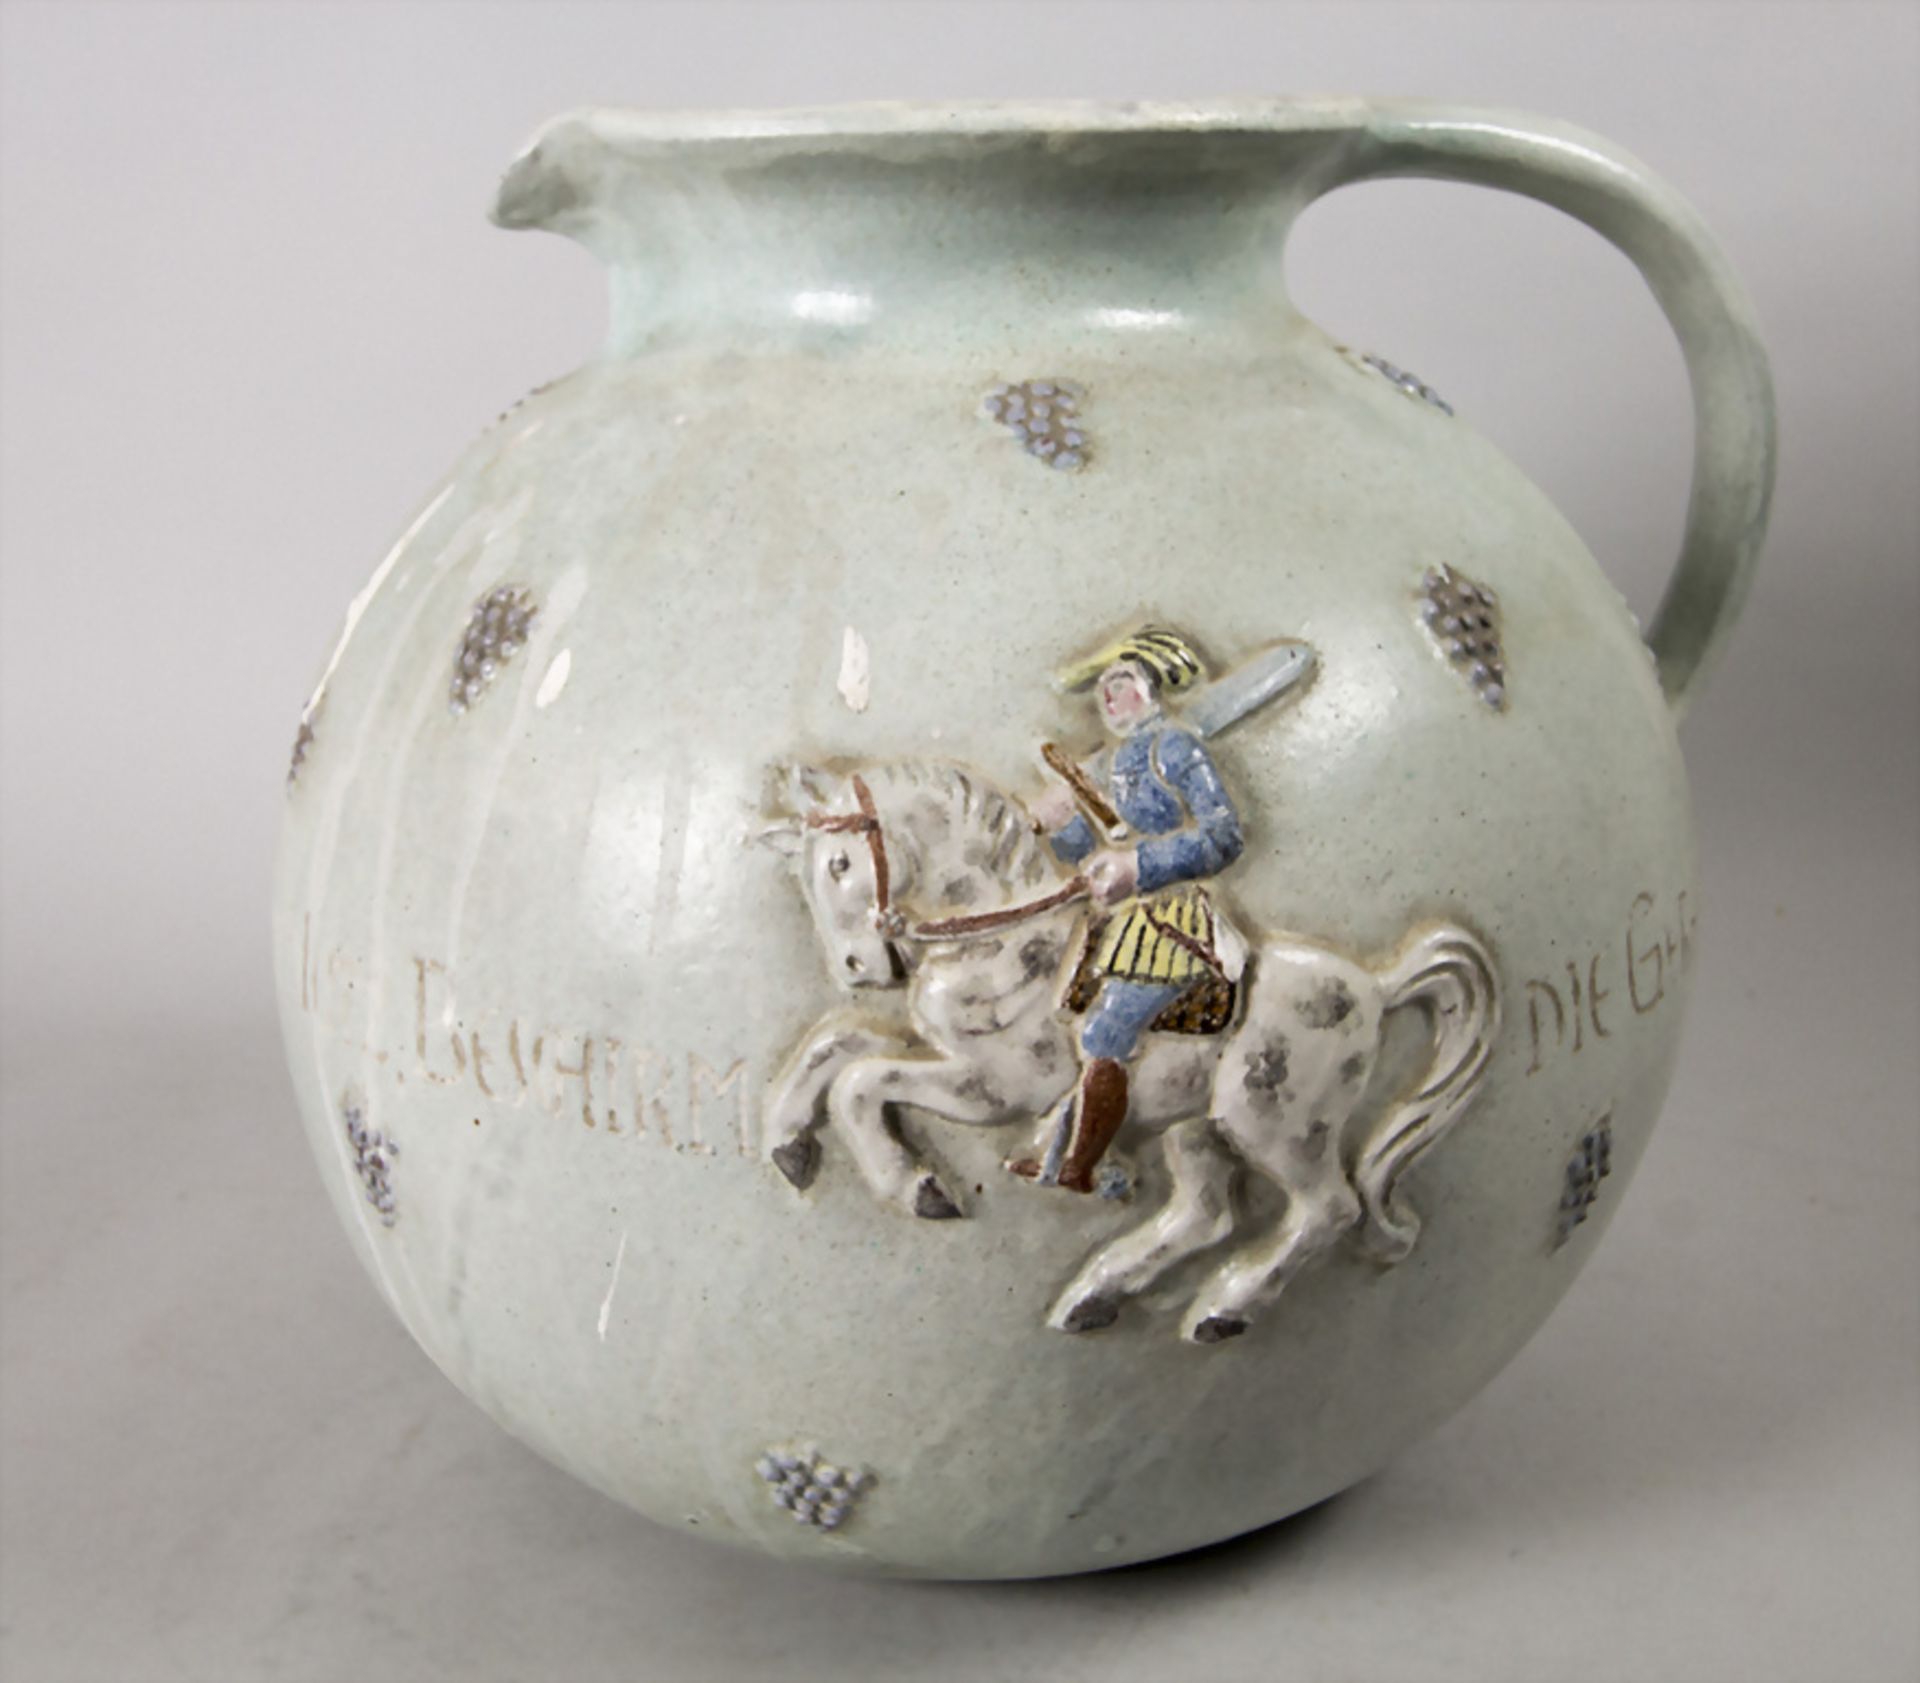 Großer Mostkrug / A large ceramic jug, Töpferei Klingler, Landstuhl, 20. Jh. - Image 3 of 5